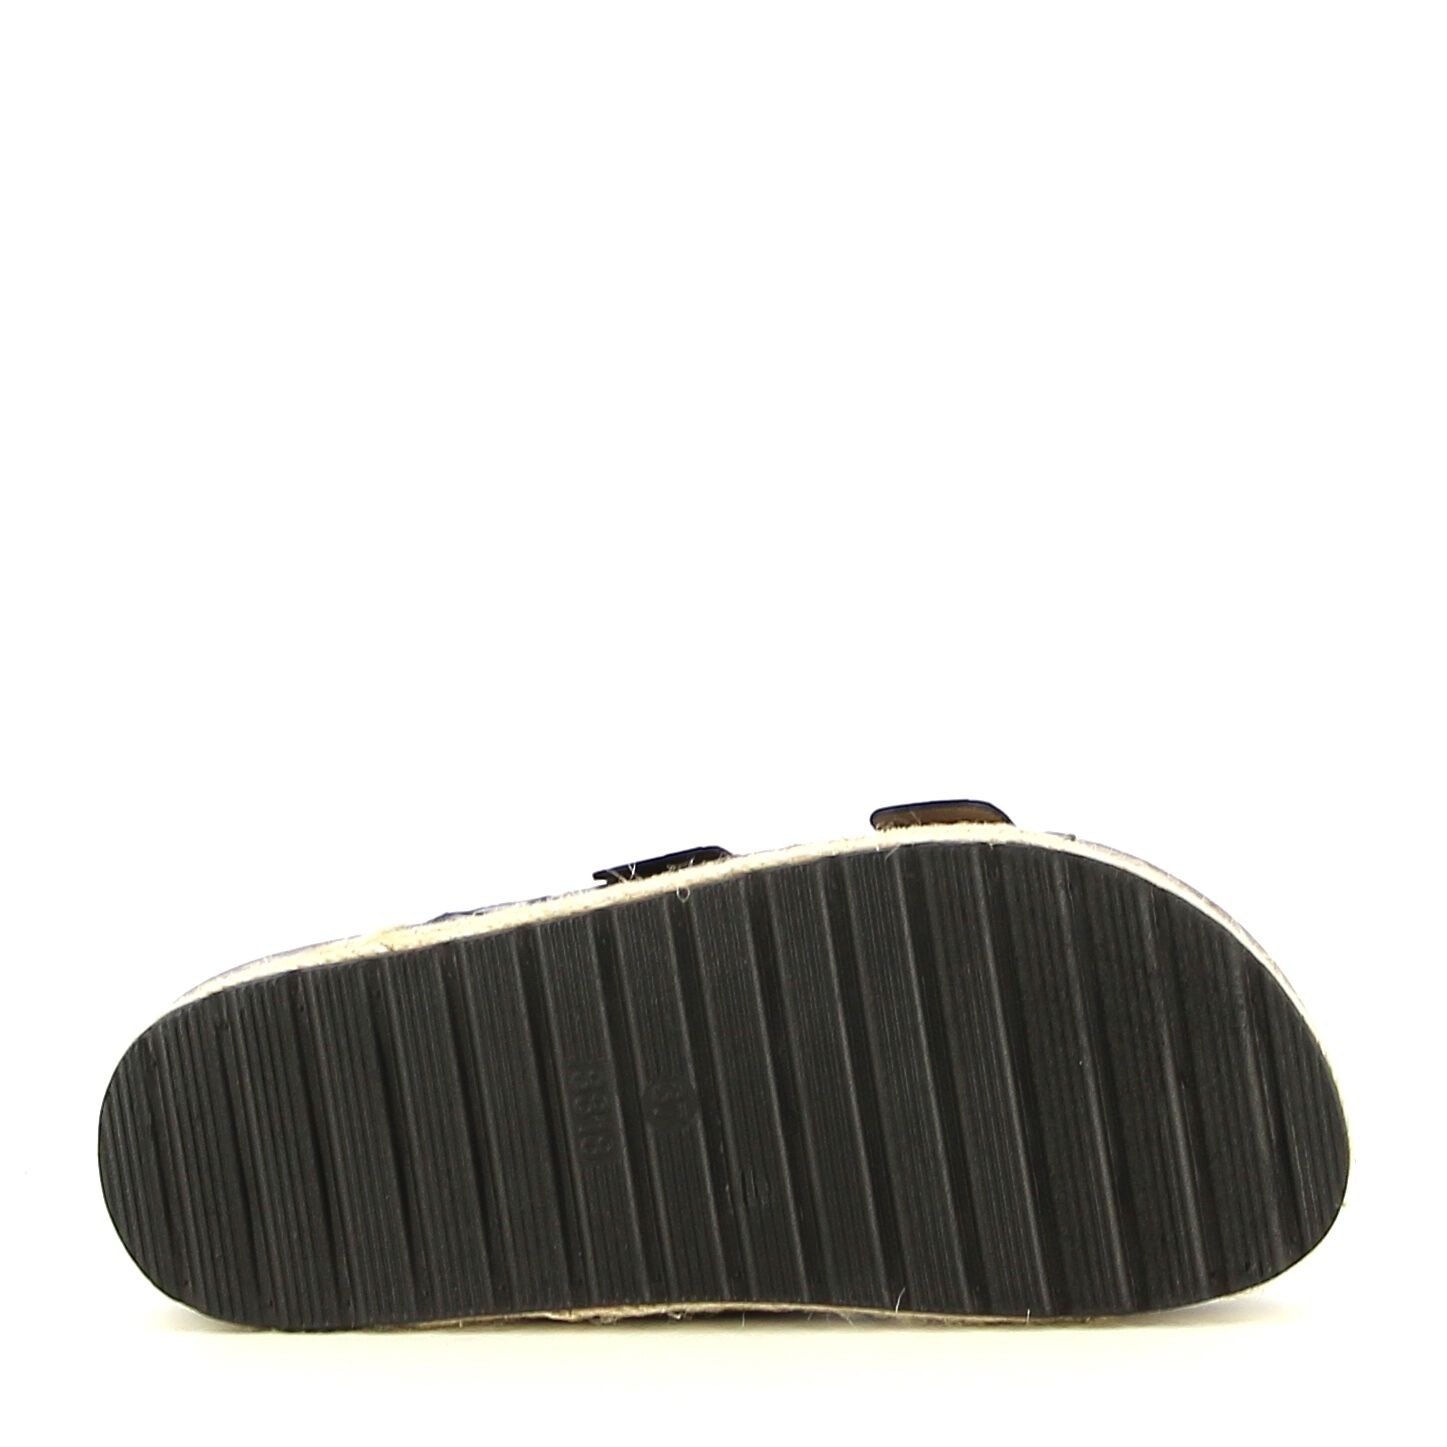 Ken Shoe Fashion - Zwart - Instappers